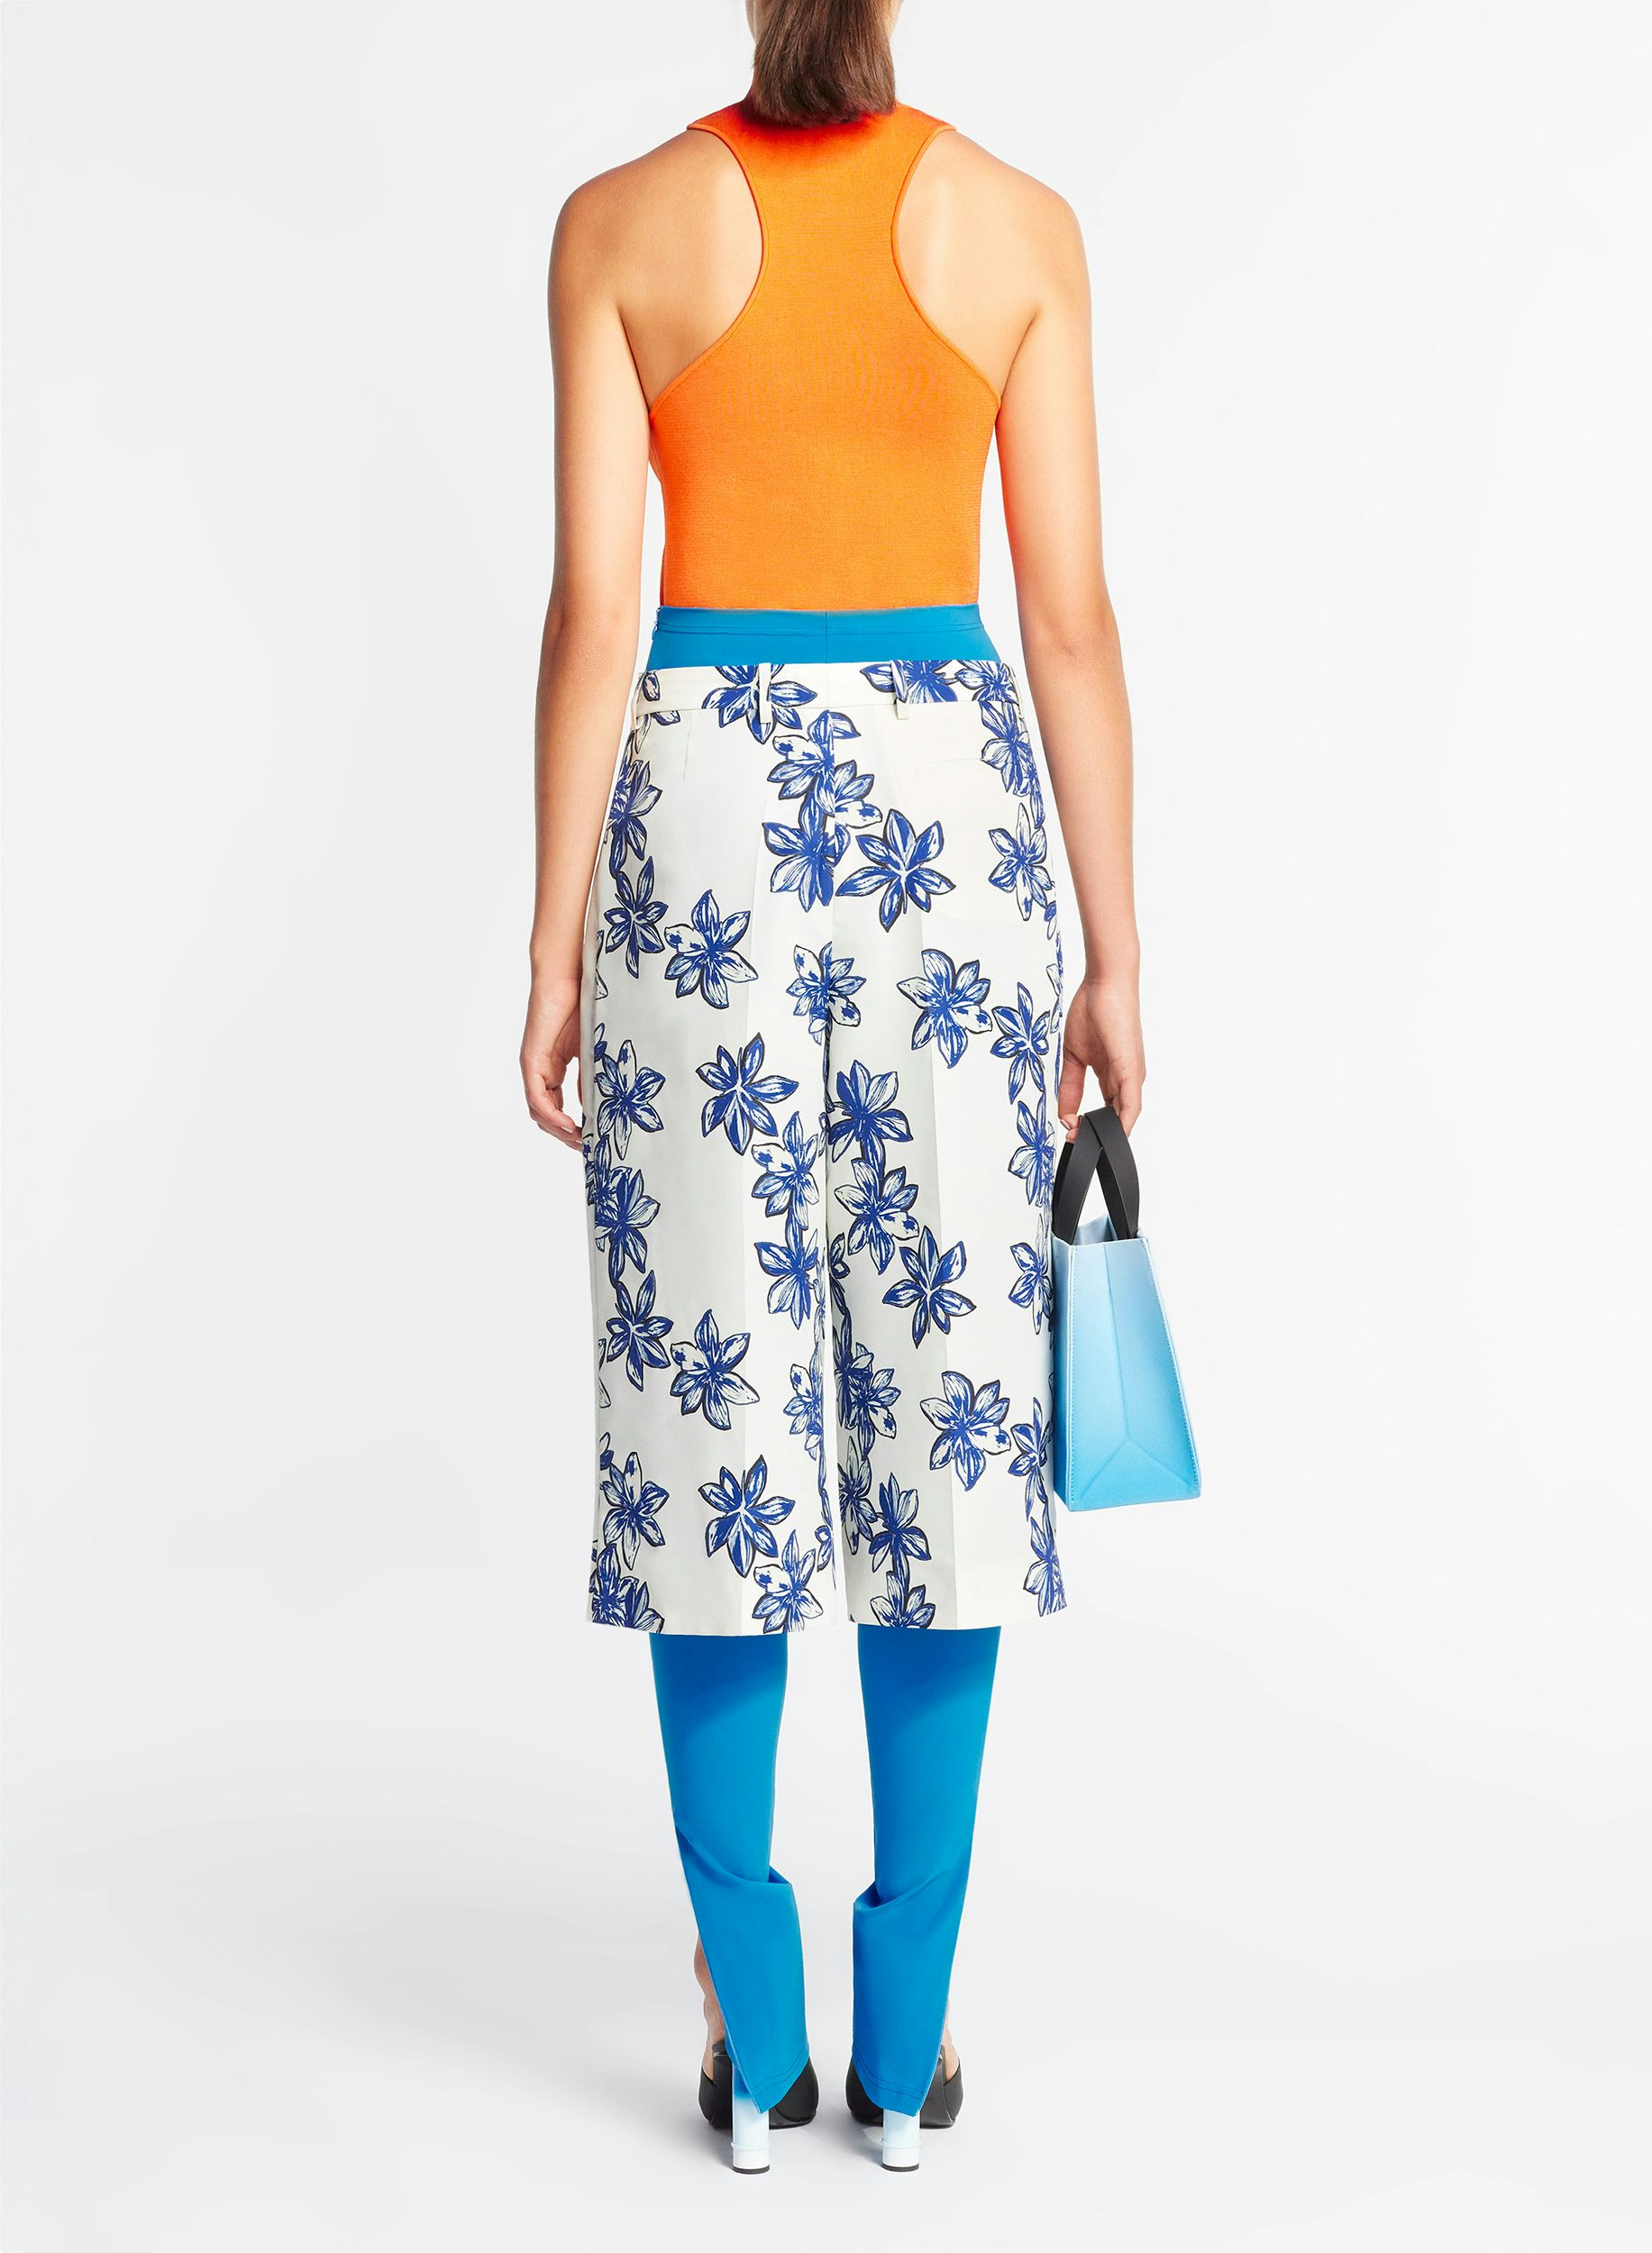 Bermuda Jaune Pâle Imprimé Fleurs de Lotus Jaune Pâle et Bleu - Nina Ricci